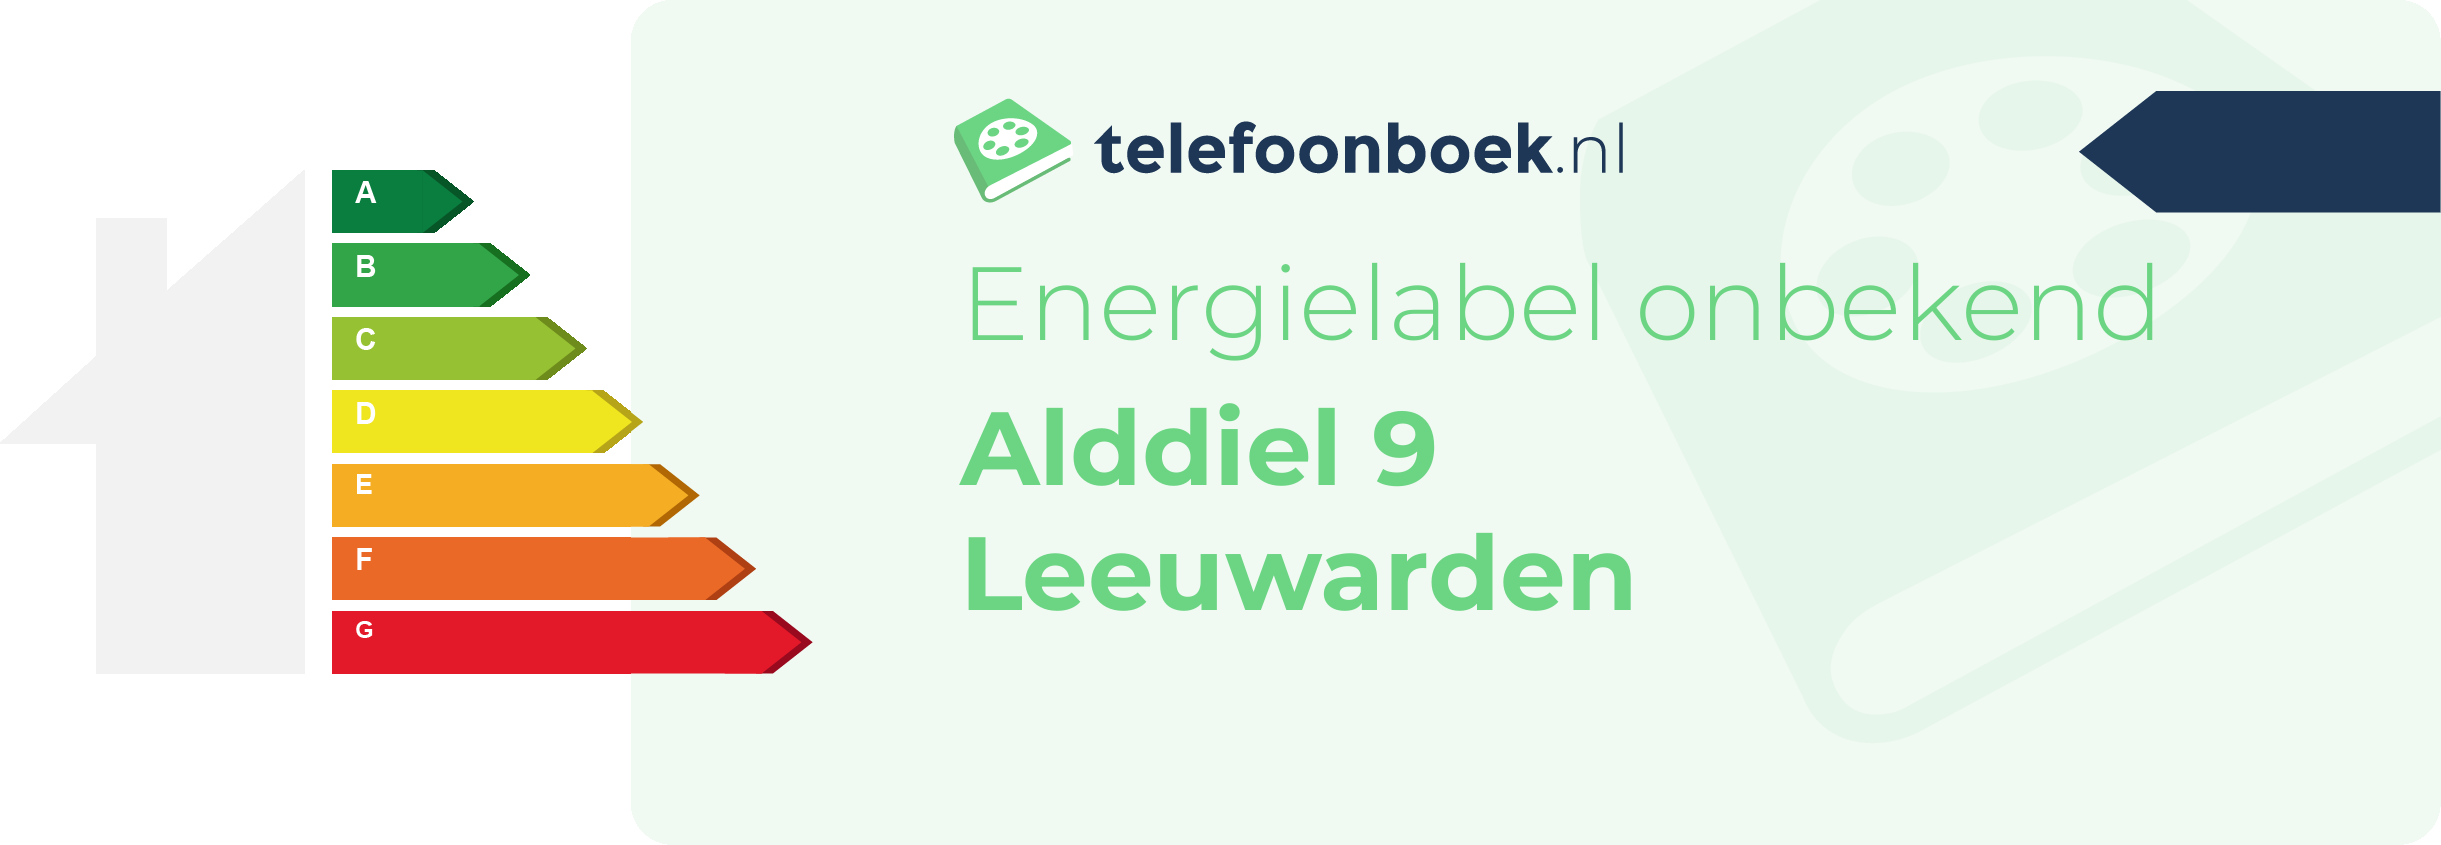 Energielabel Alddiel 9 Leeuwarden